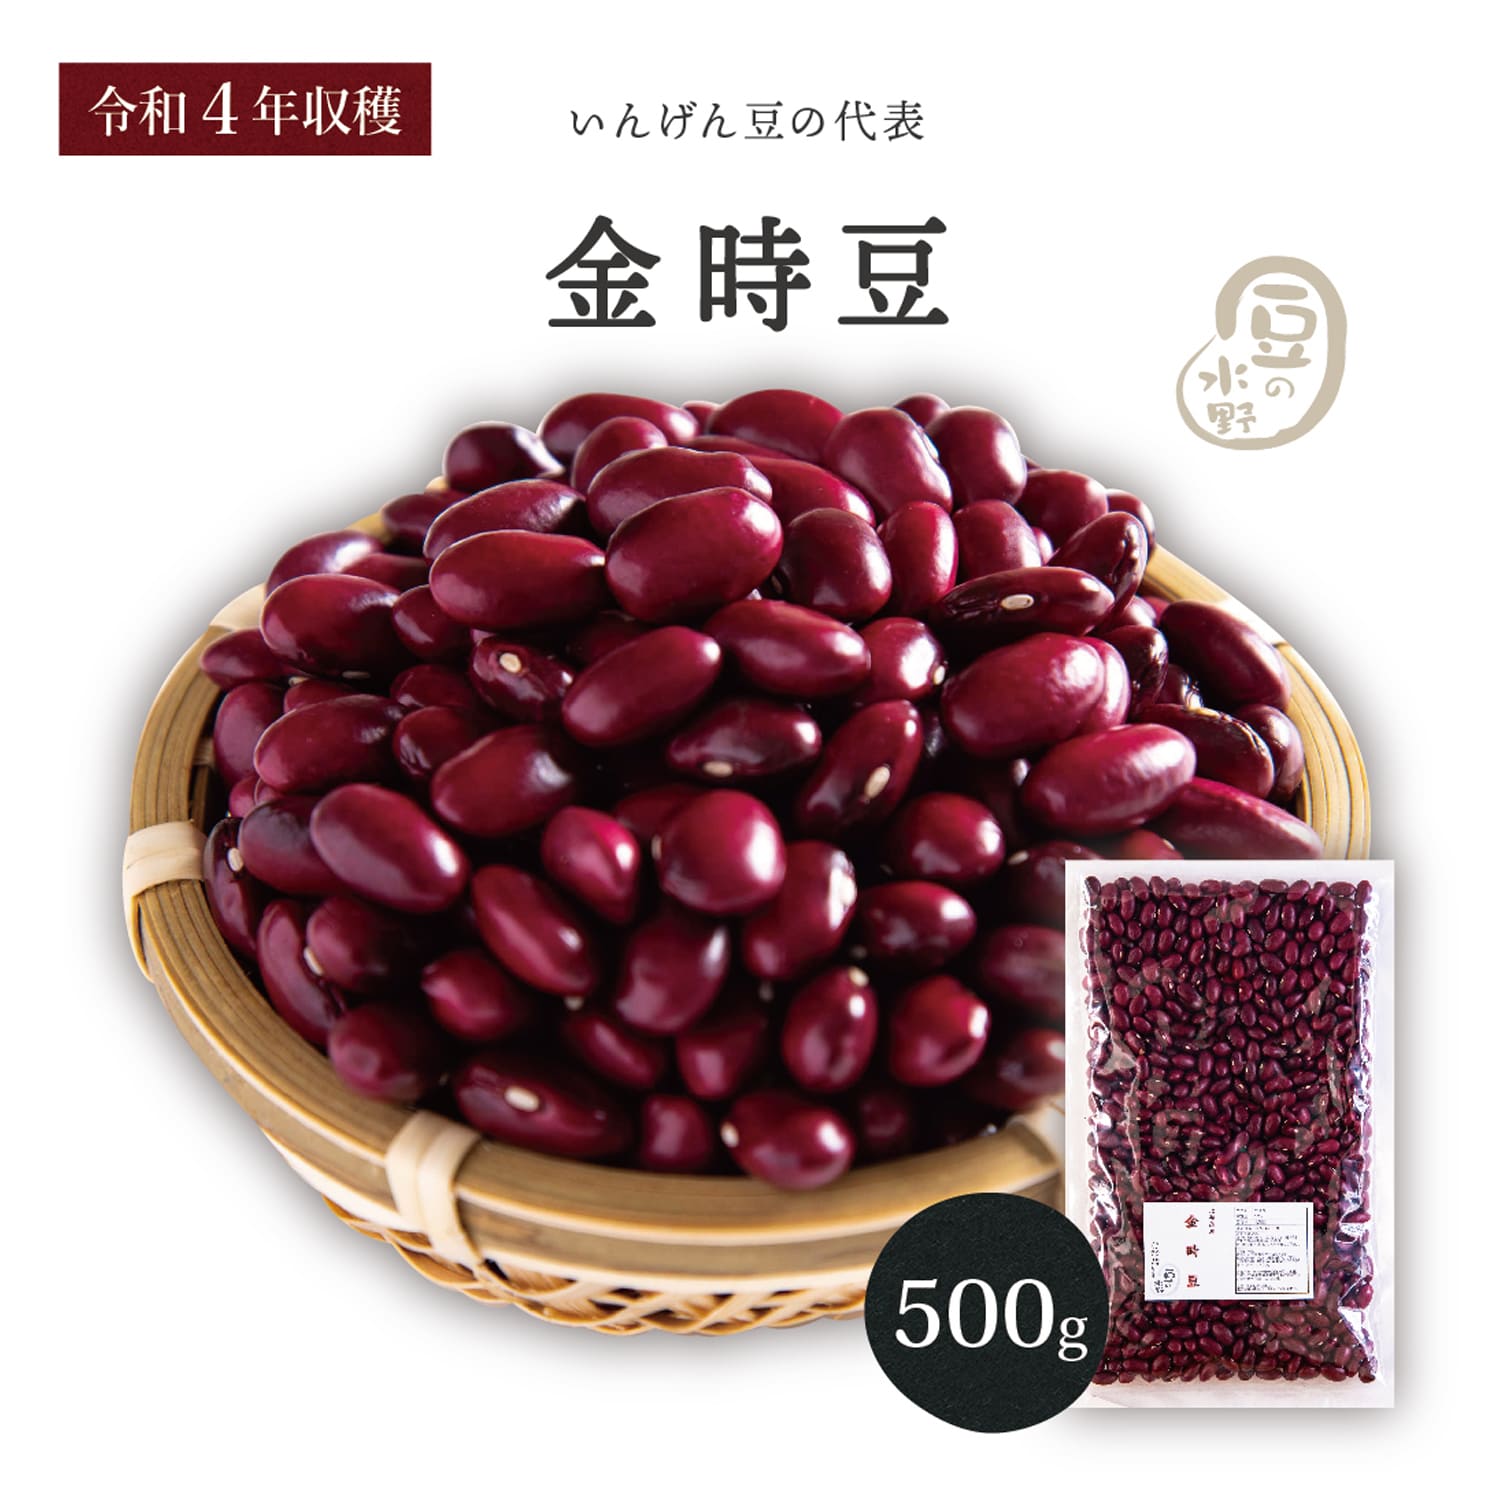 紫花豆 500g メール便送料無料 北海道産 新物